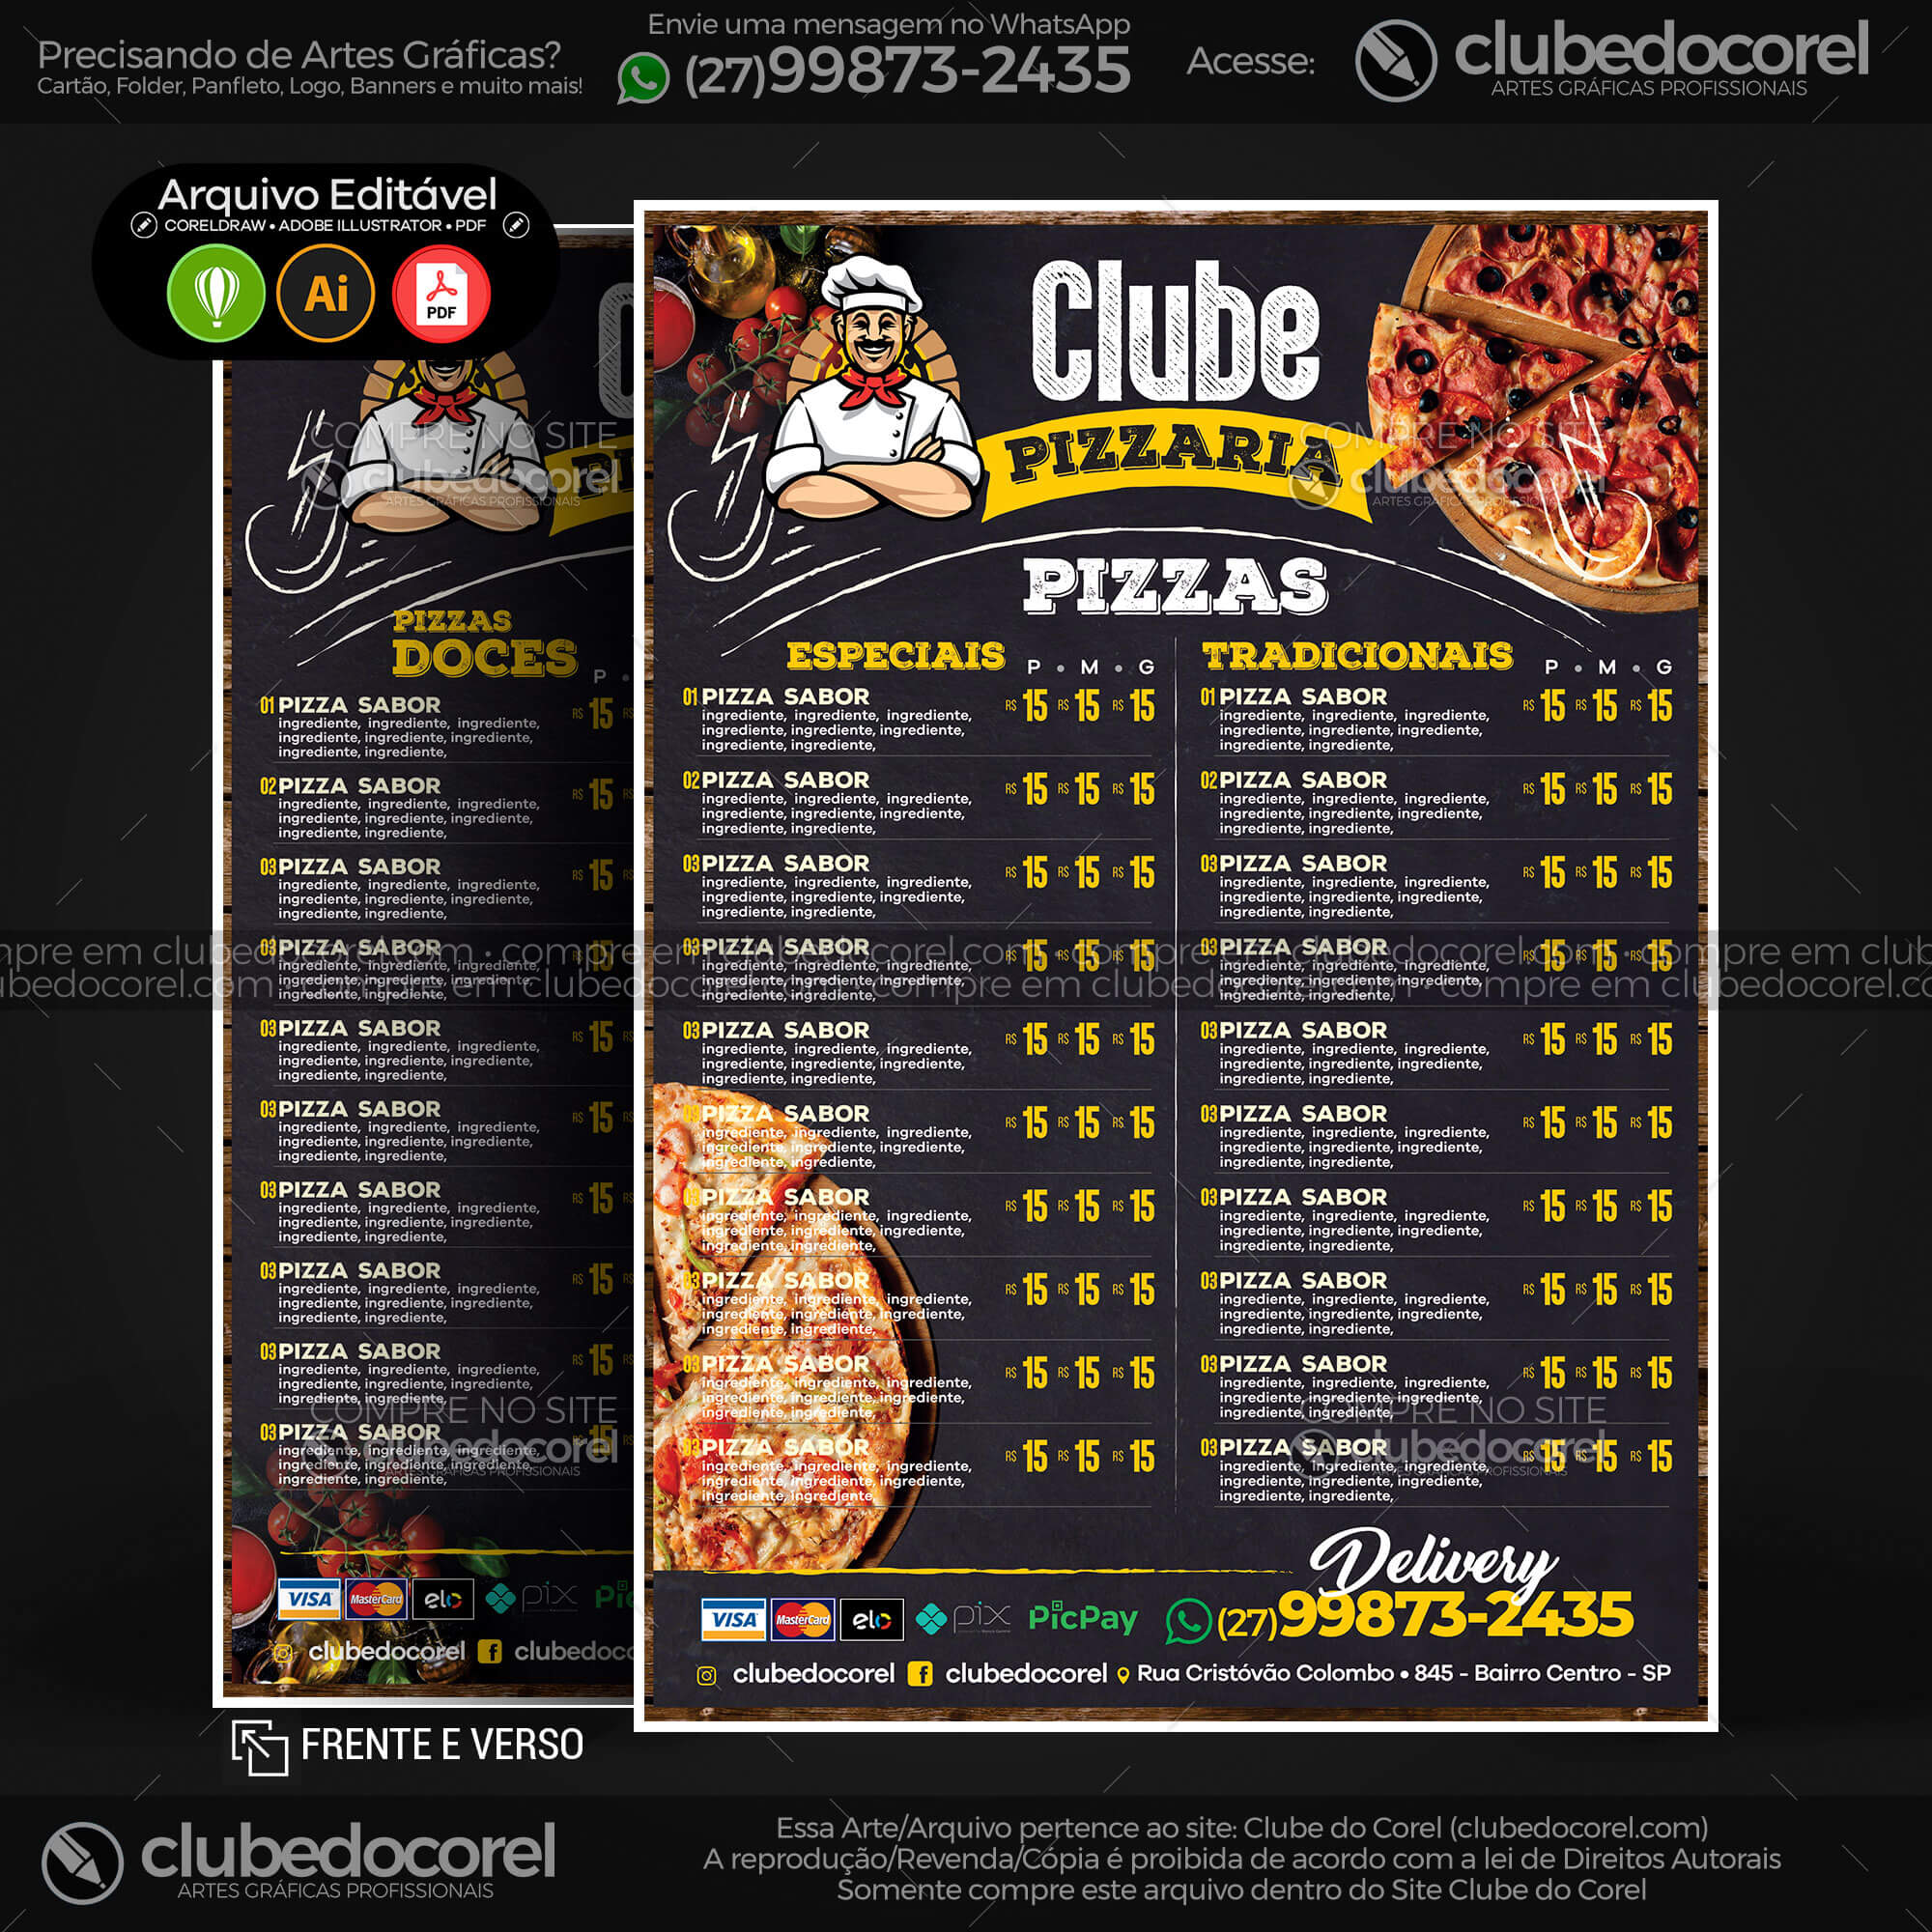 Cardápio Pizzaria - Pizza e Hamburguer (Lanche) - Modelo pronto Editável  #01 [CDR AI PDF] | Clube do Corel - cardapio pizzaria